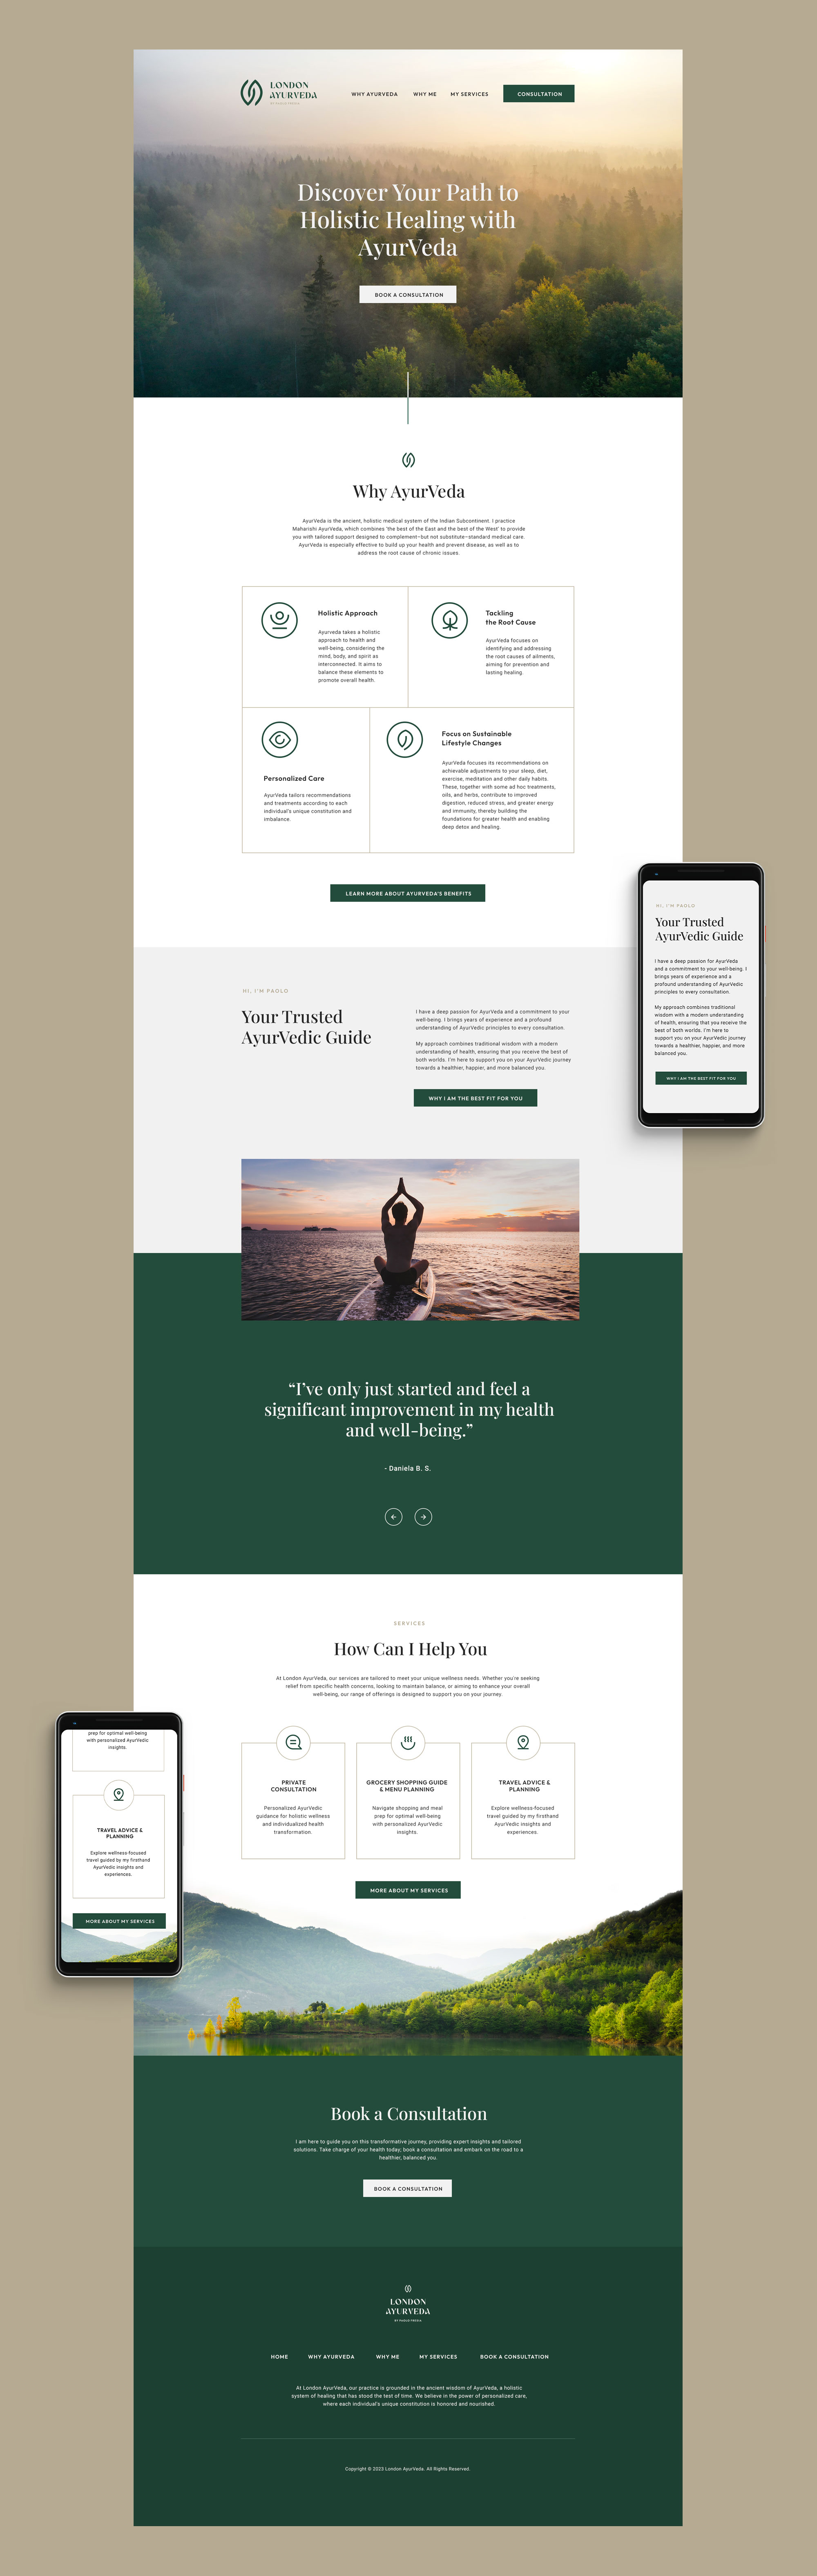 wellness website design